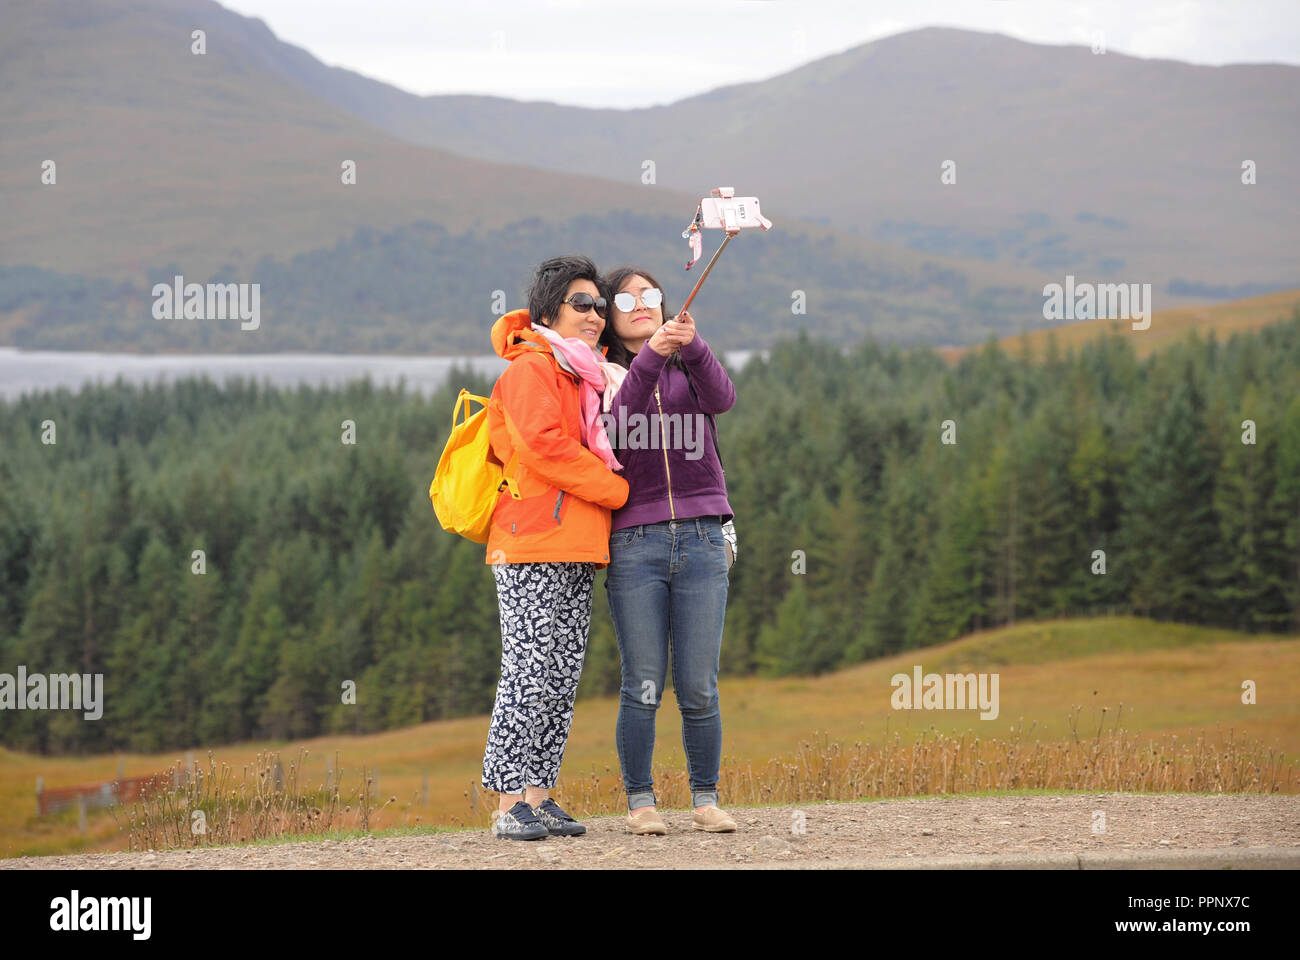 Los turistas japoneses SELFIE tomando fotografías en las Highlands escocesas RE TURISMO AUTOCARES VACACIONES TOURS Mirador vistas escénicas UK Foto de stock